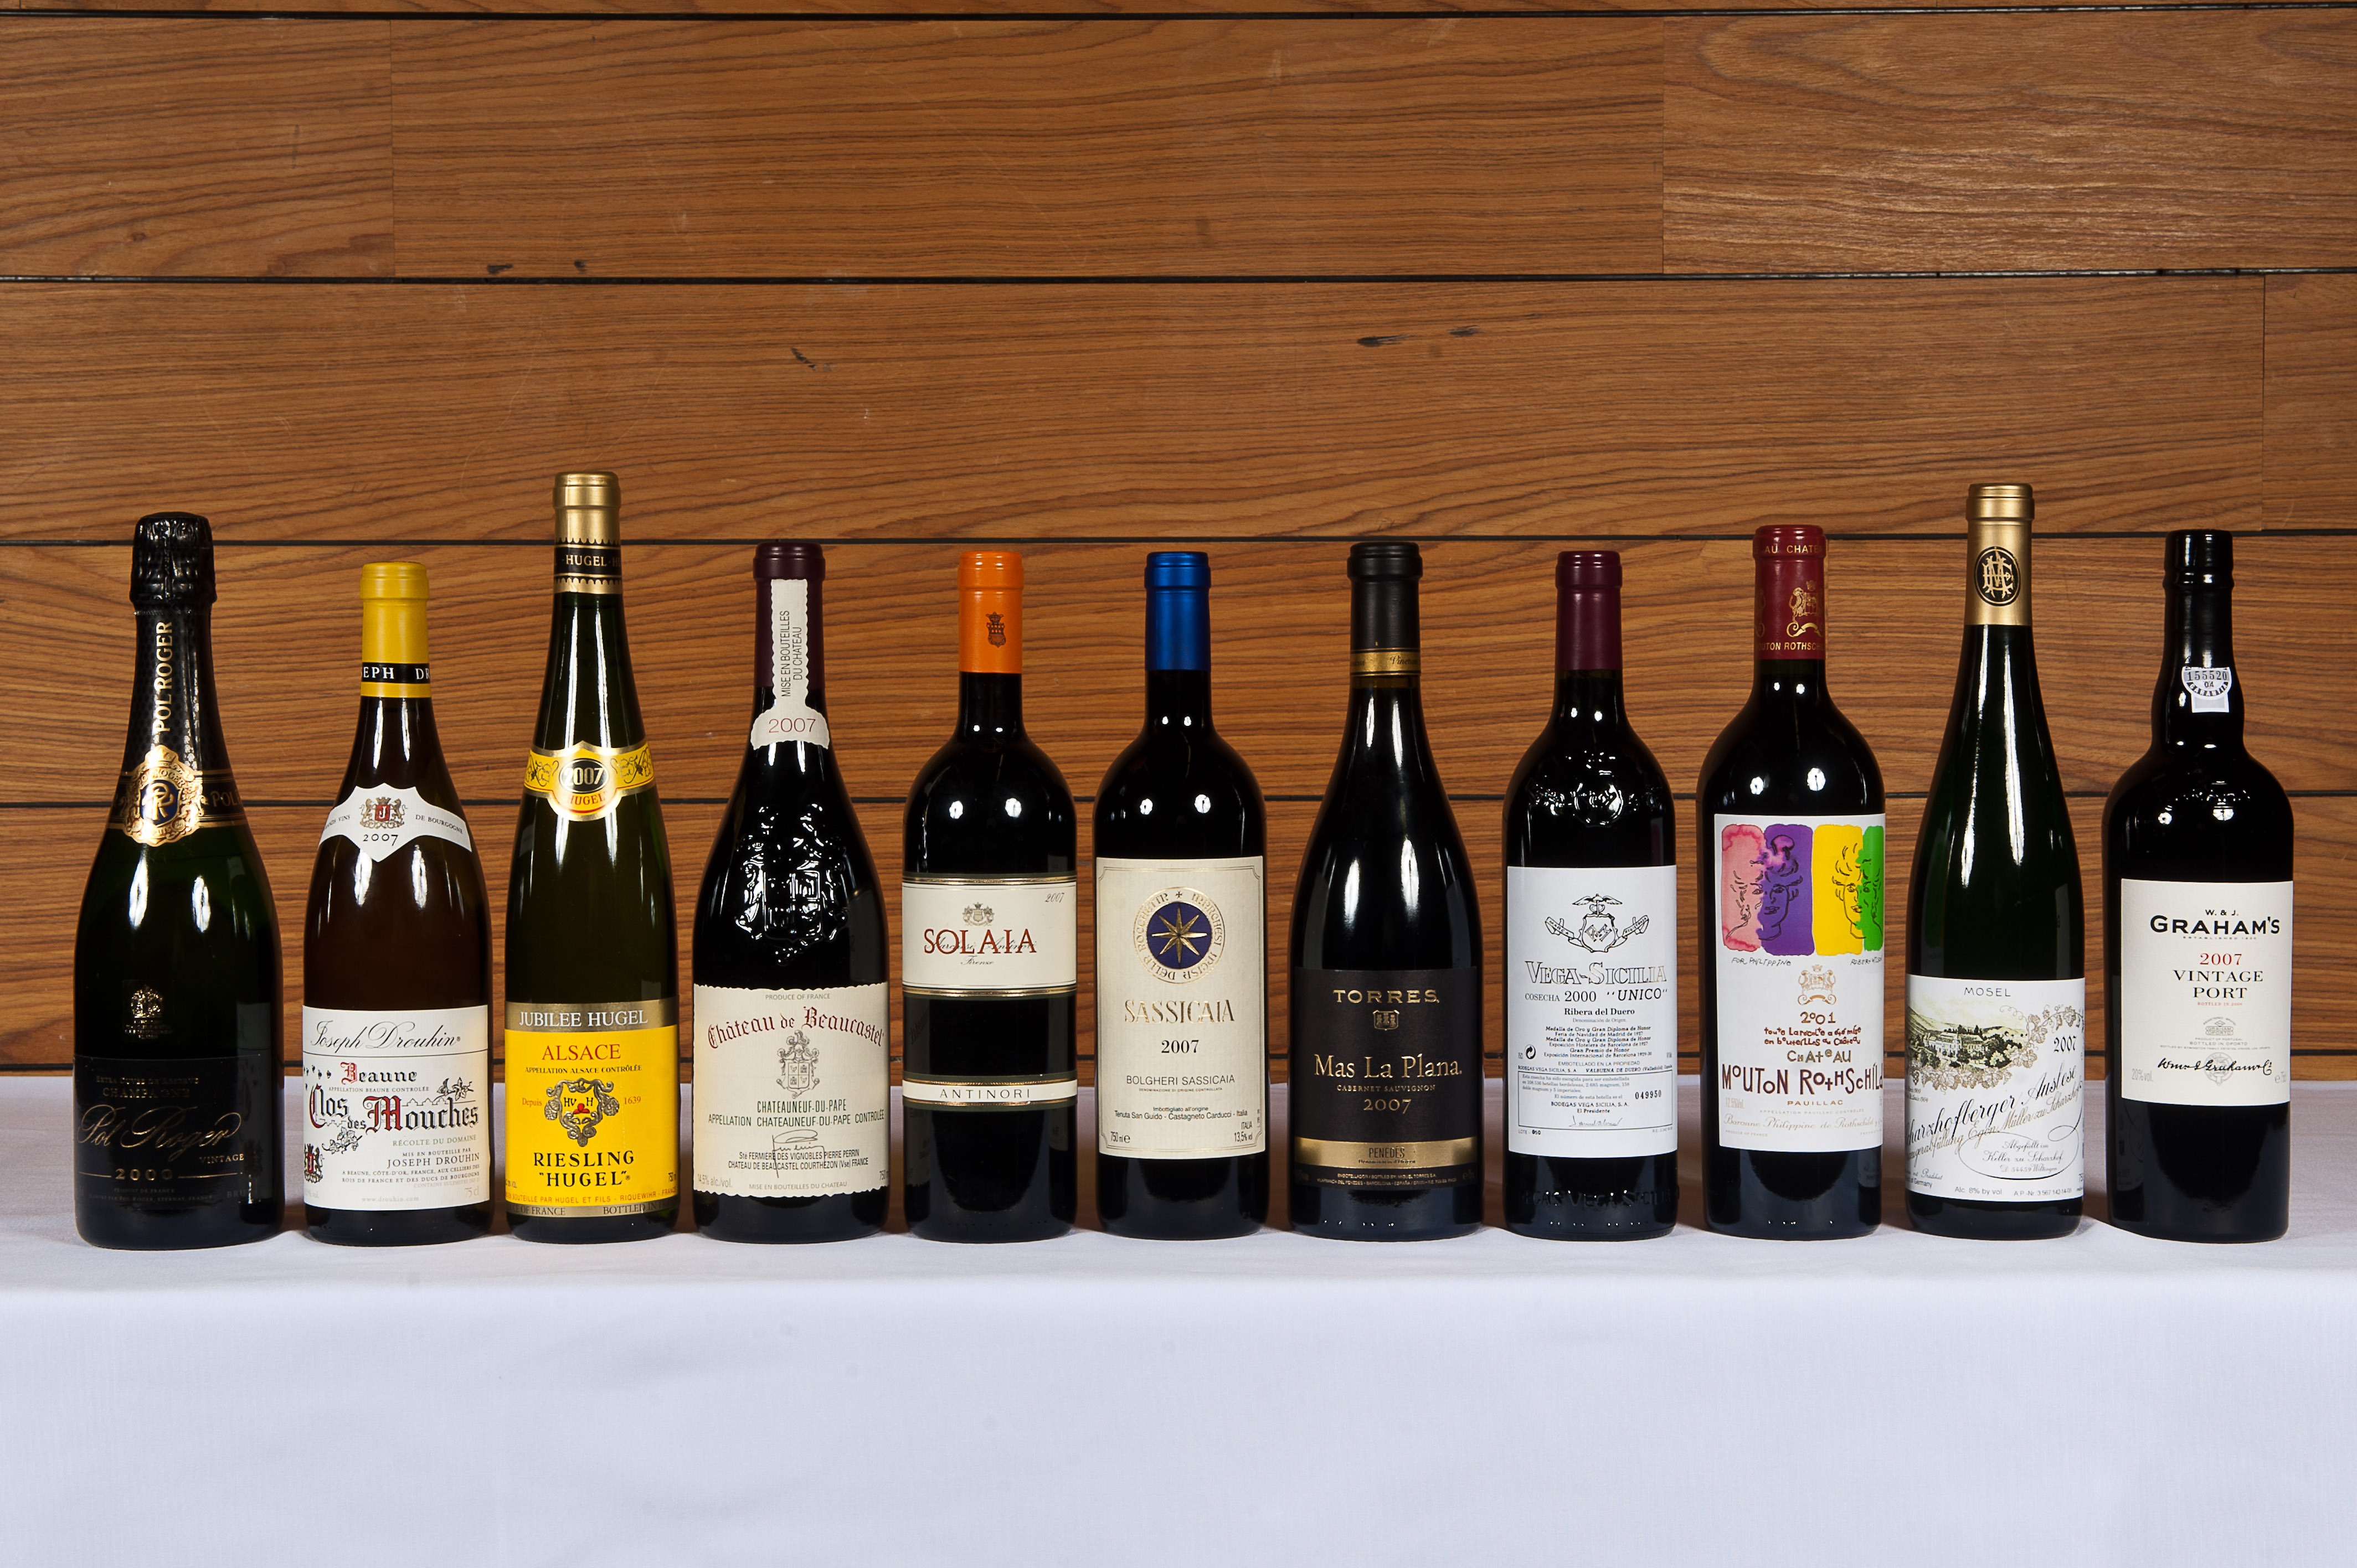 Antinori e novos rótulos na Wine: sabor e delicadeza em vinhos